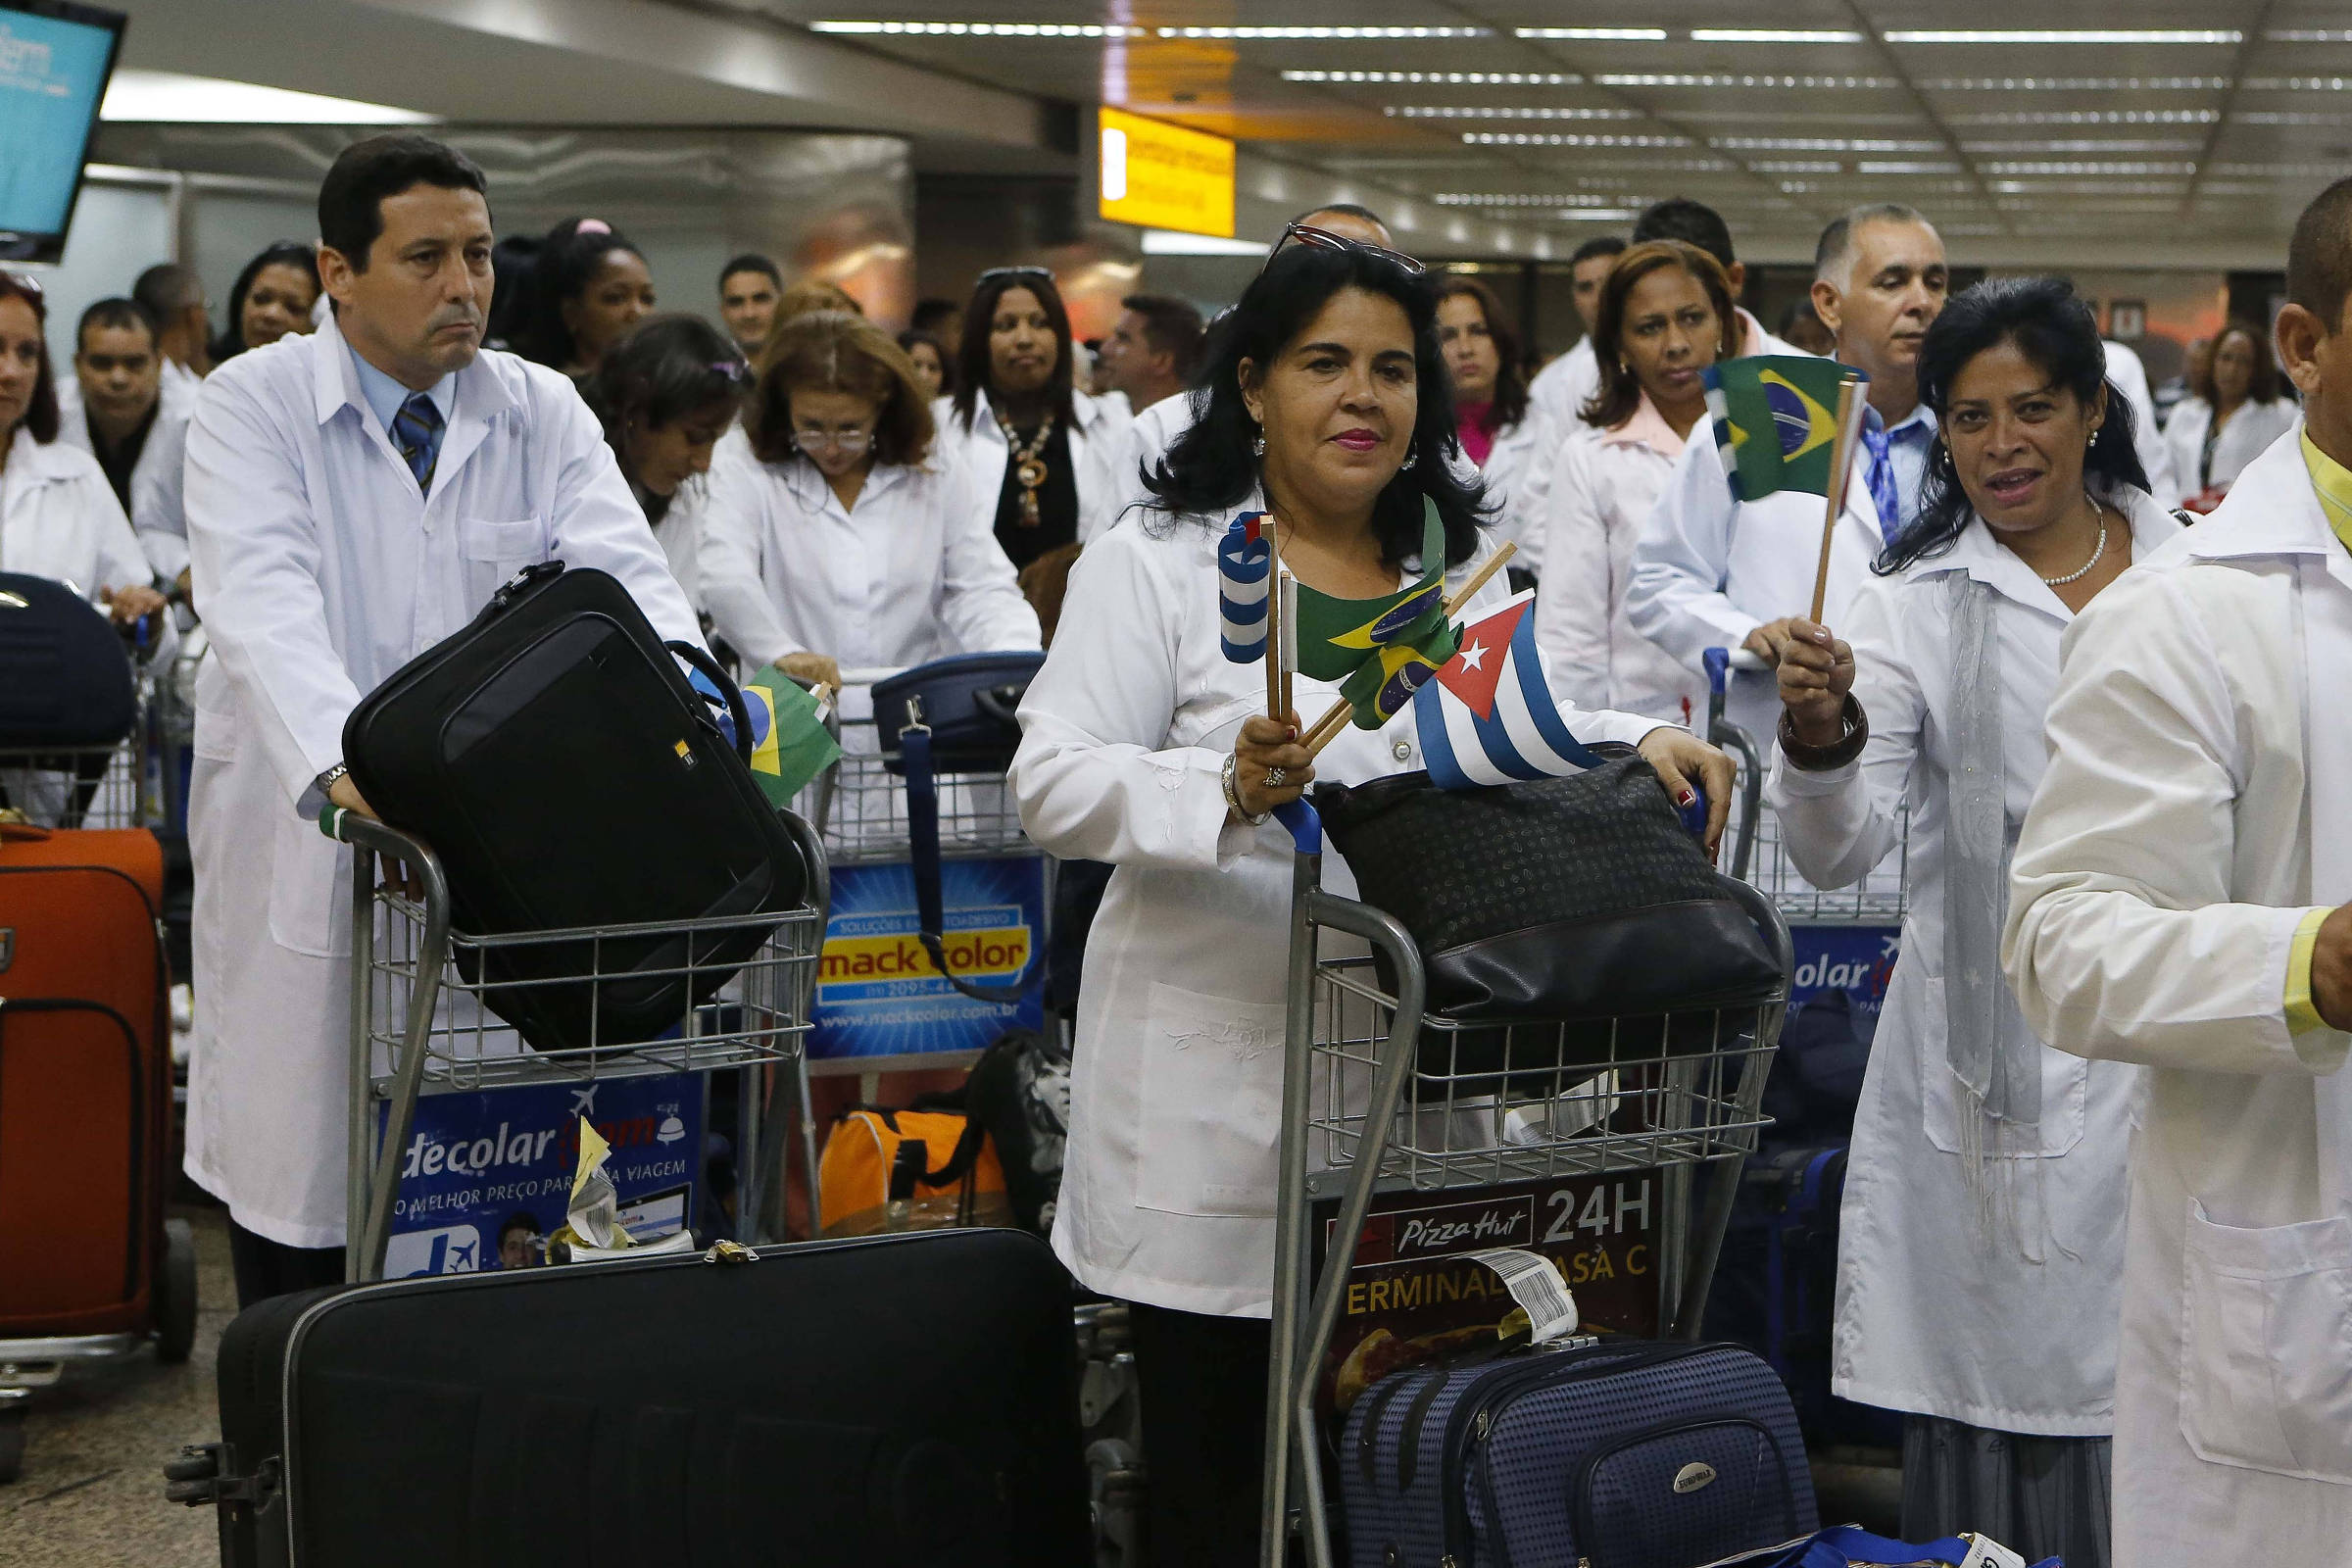 Primeiros médicos inscritos para substituir cubanos querem atuar em capitais